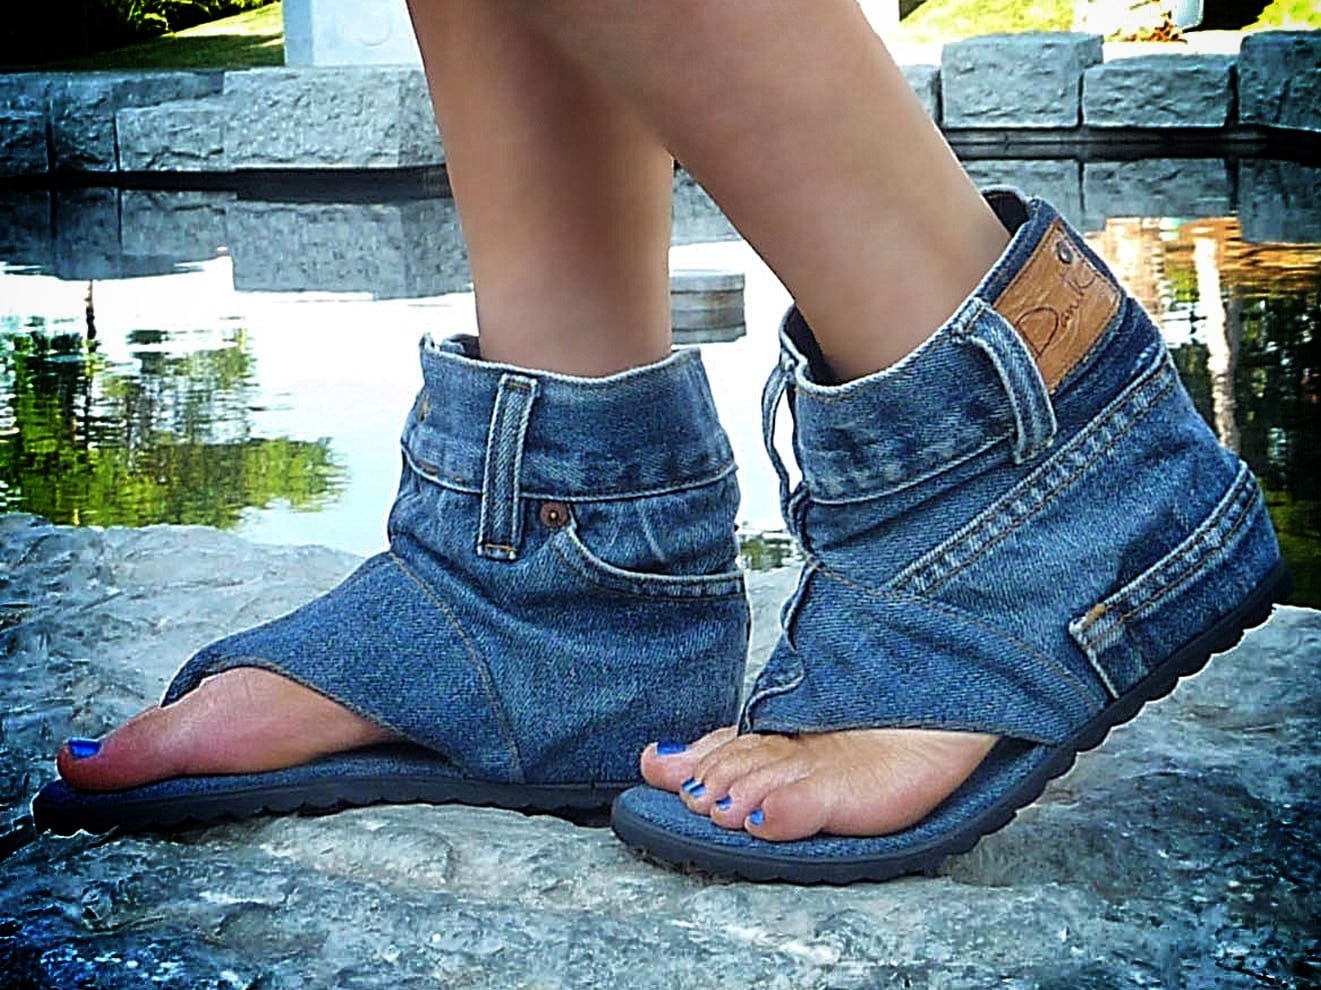 jeans-sandals-denim-shoes-etsy